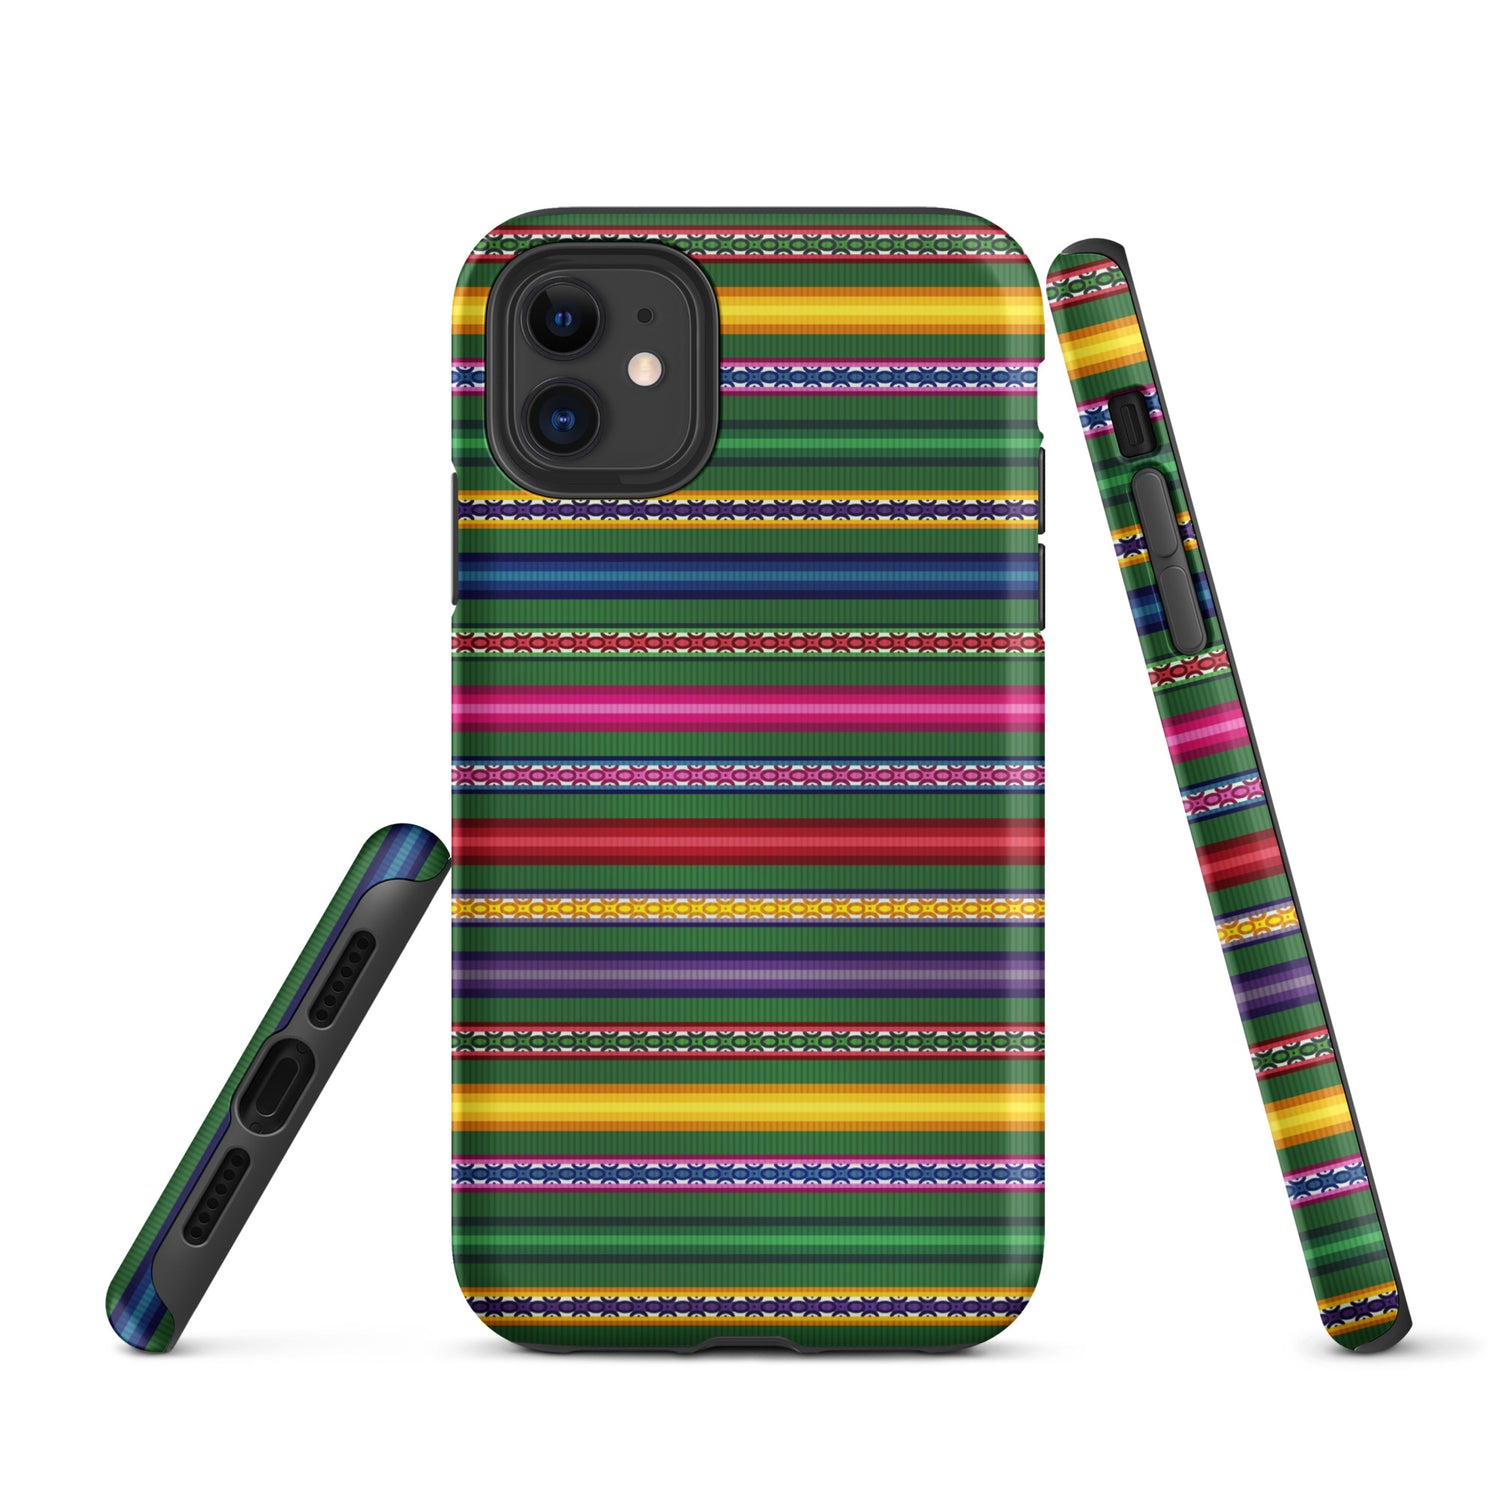 Peruvian Tough iPhone case